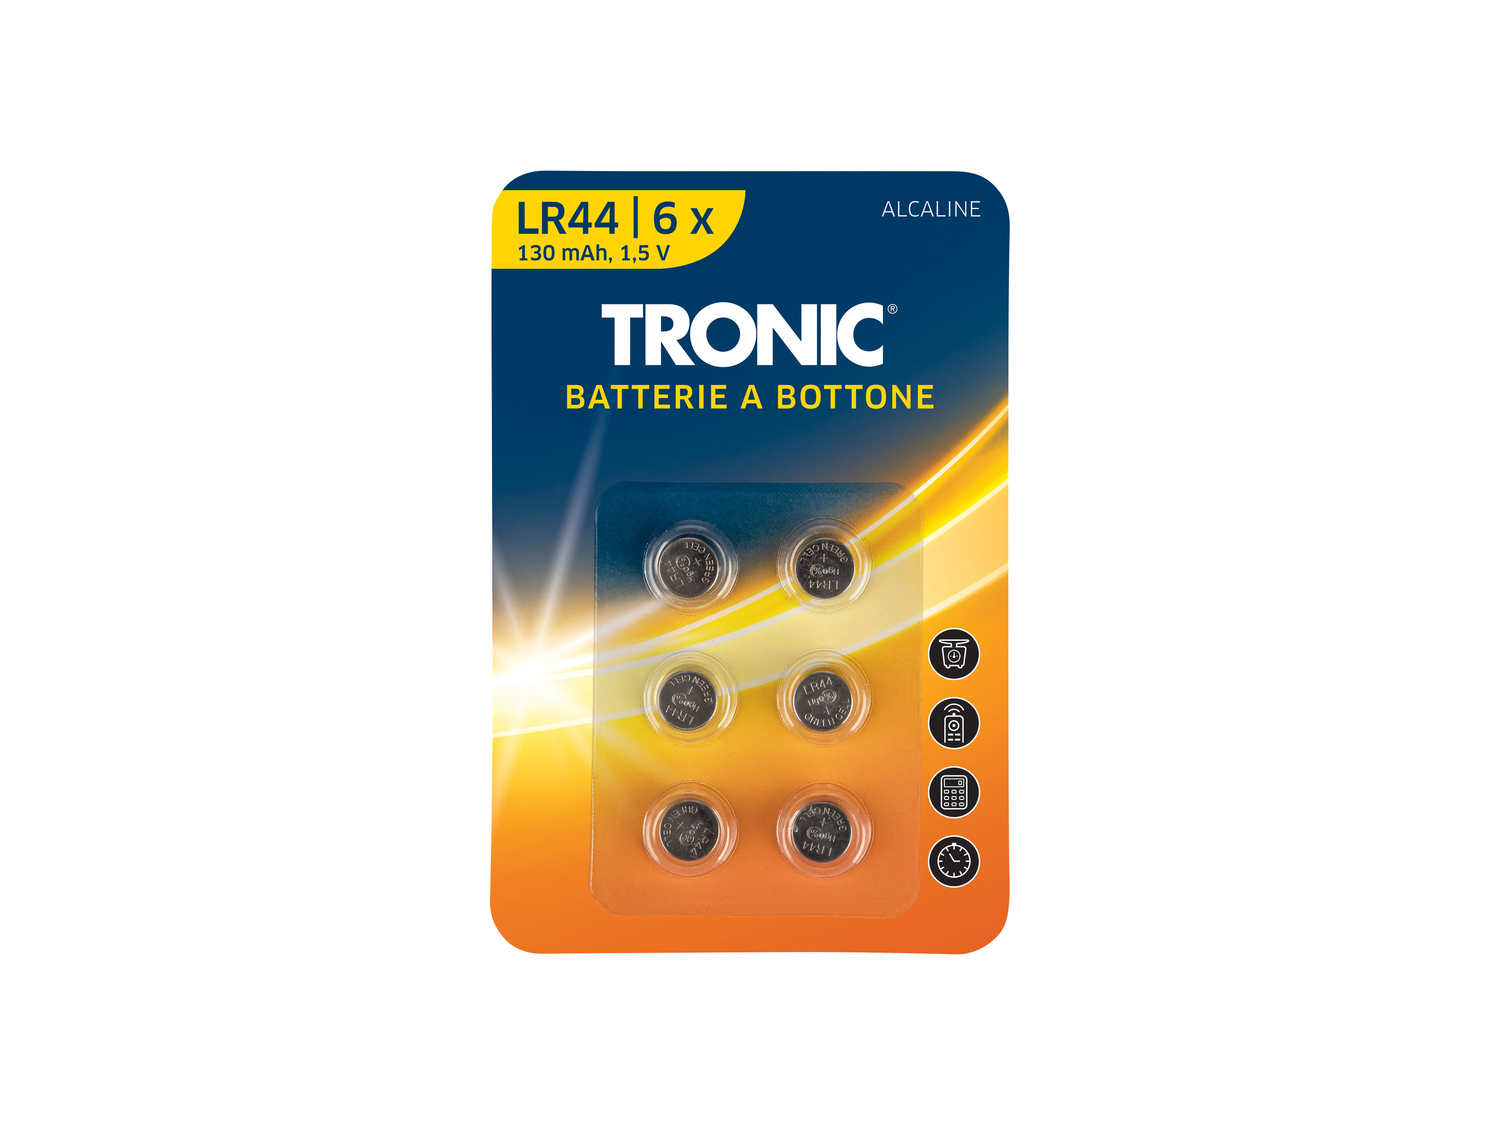 Batterie a bottone Tronic, prezzo 0.99 &#8364;  
6 pezzi
Caratteristiche